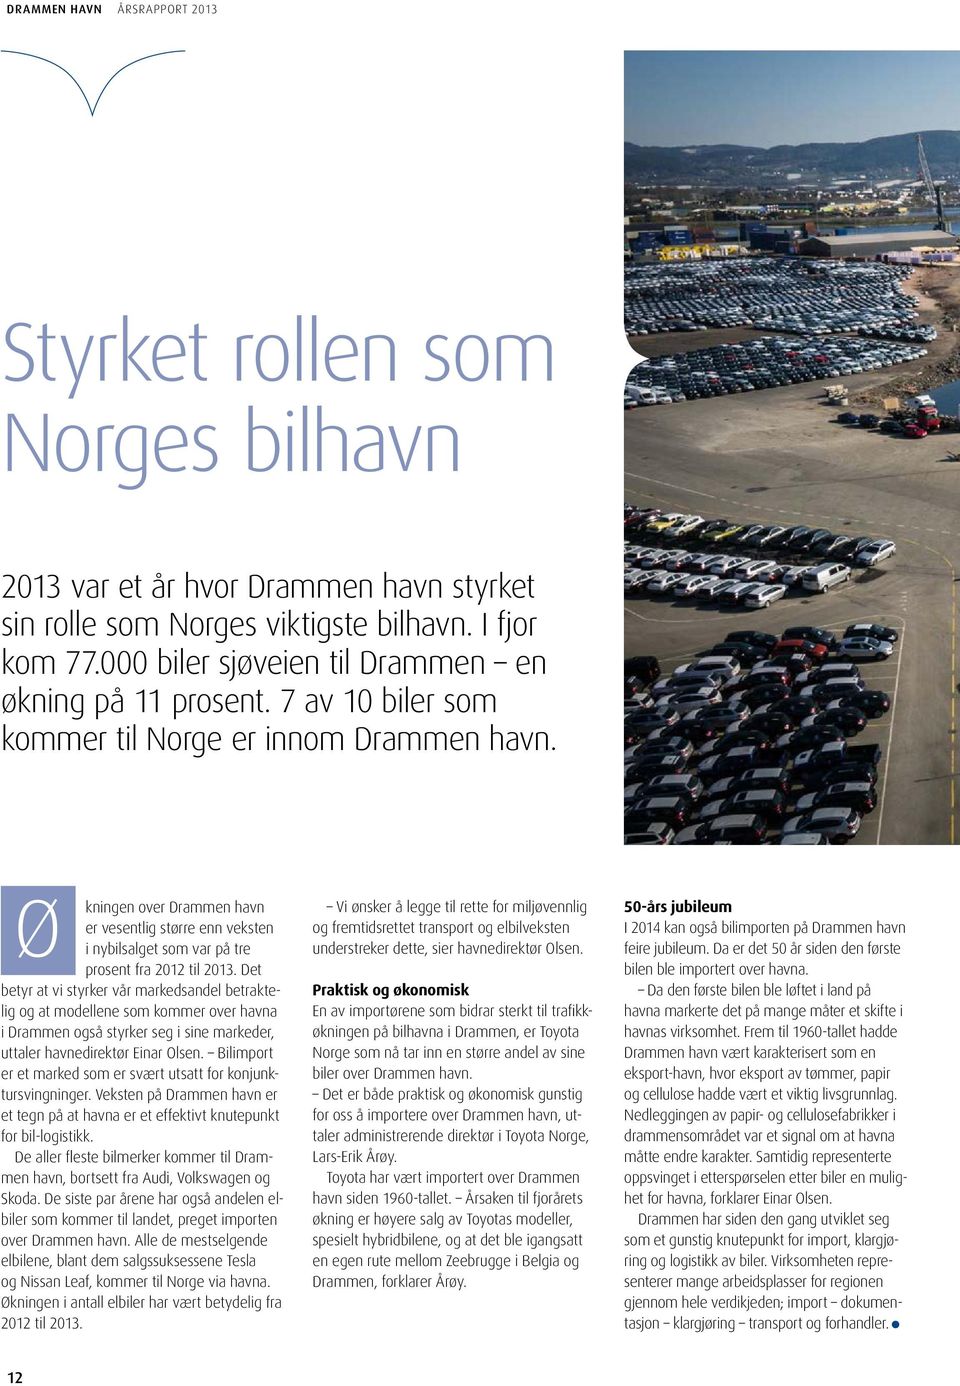 Det betyr at vi styrker vår markedsandel betraktelig og at modellene som kommer over havna i Drammen også styrker seg i sine markeder, uttaler havnedirektør Einar Olsen.